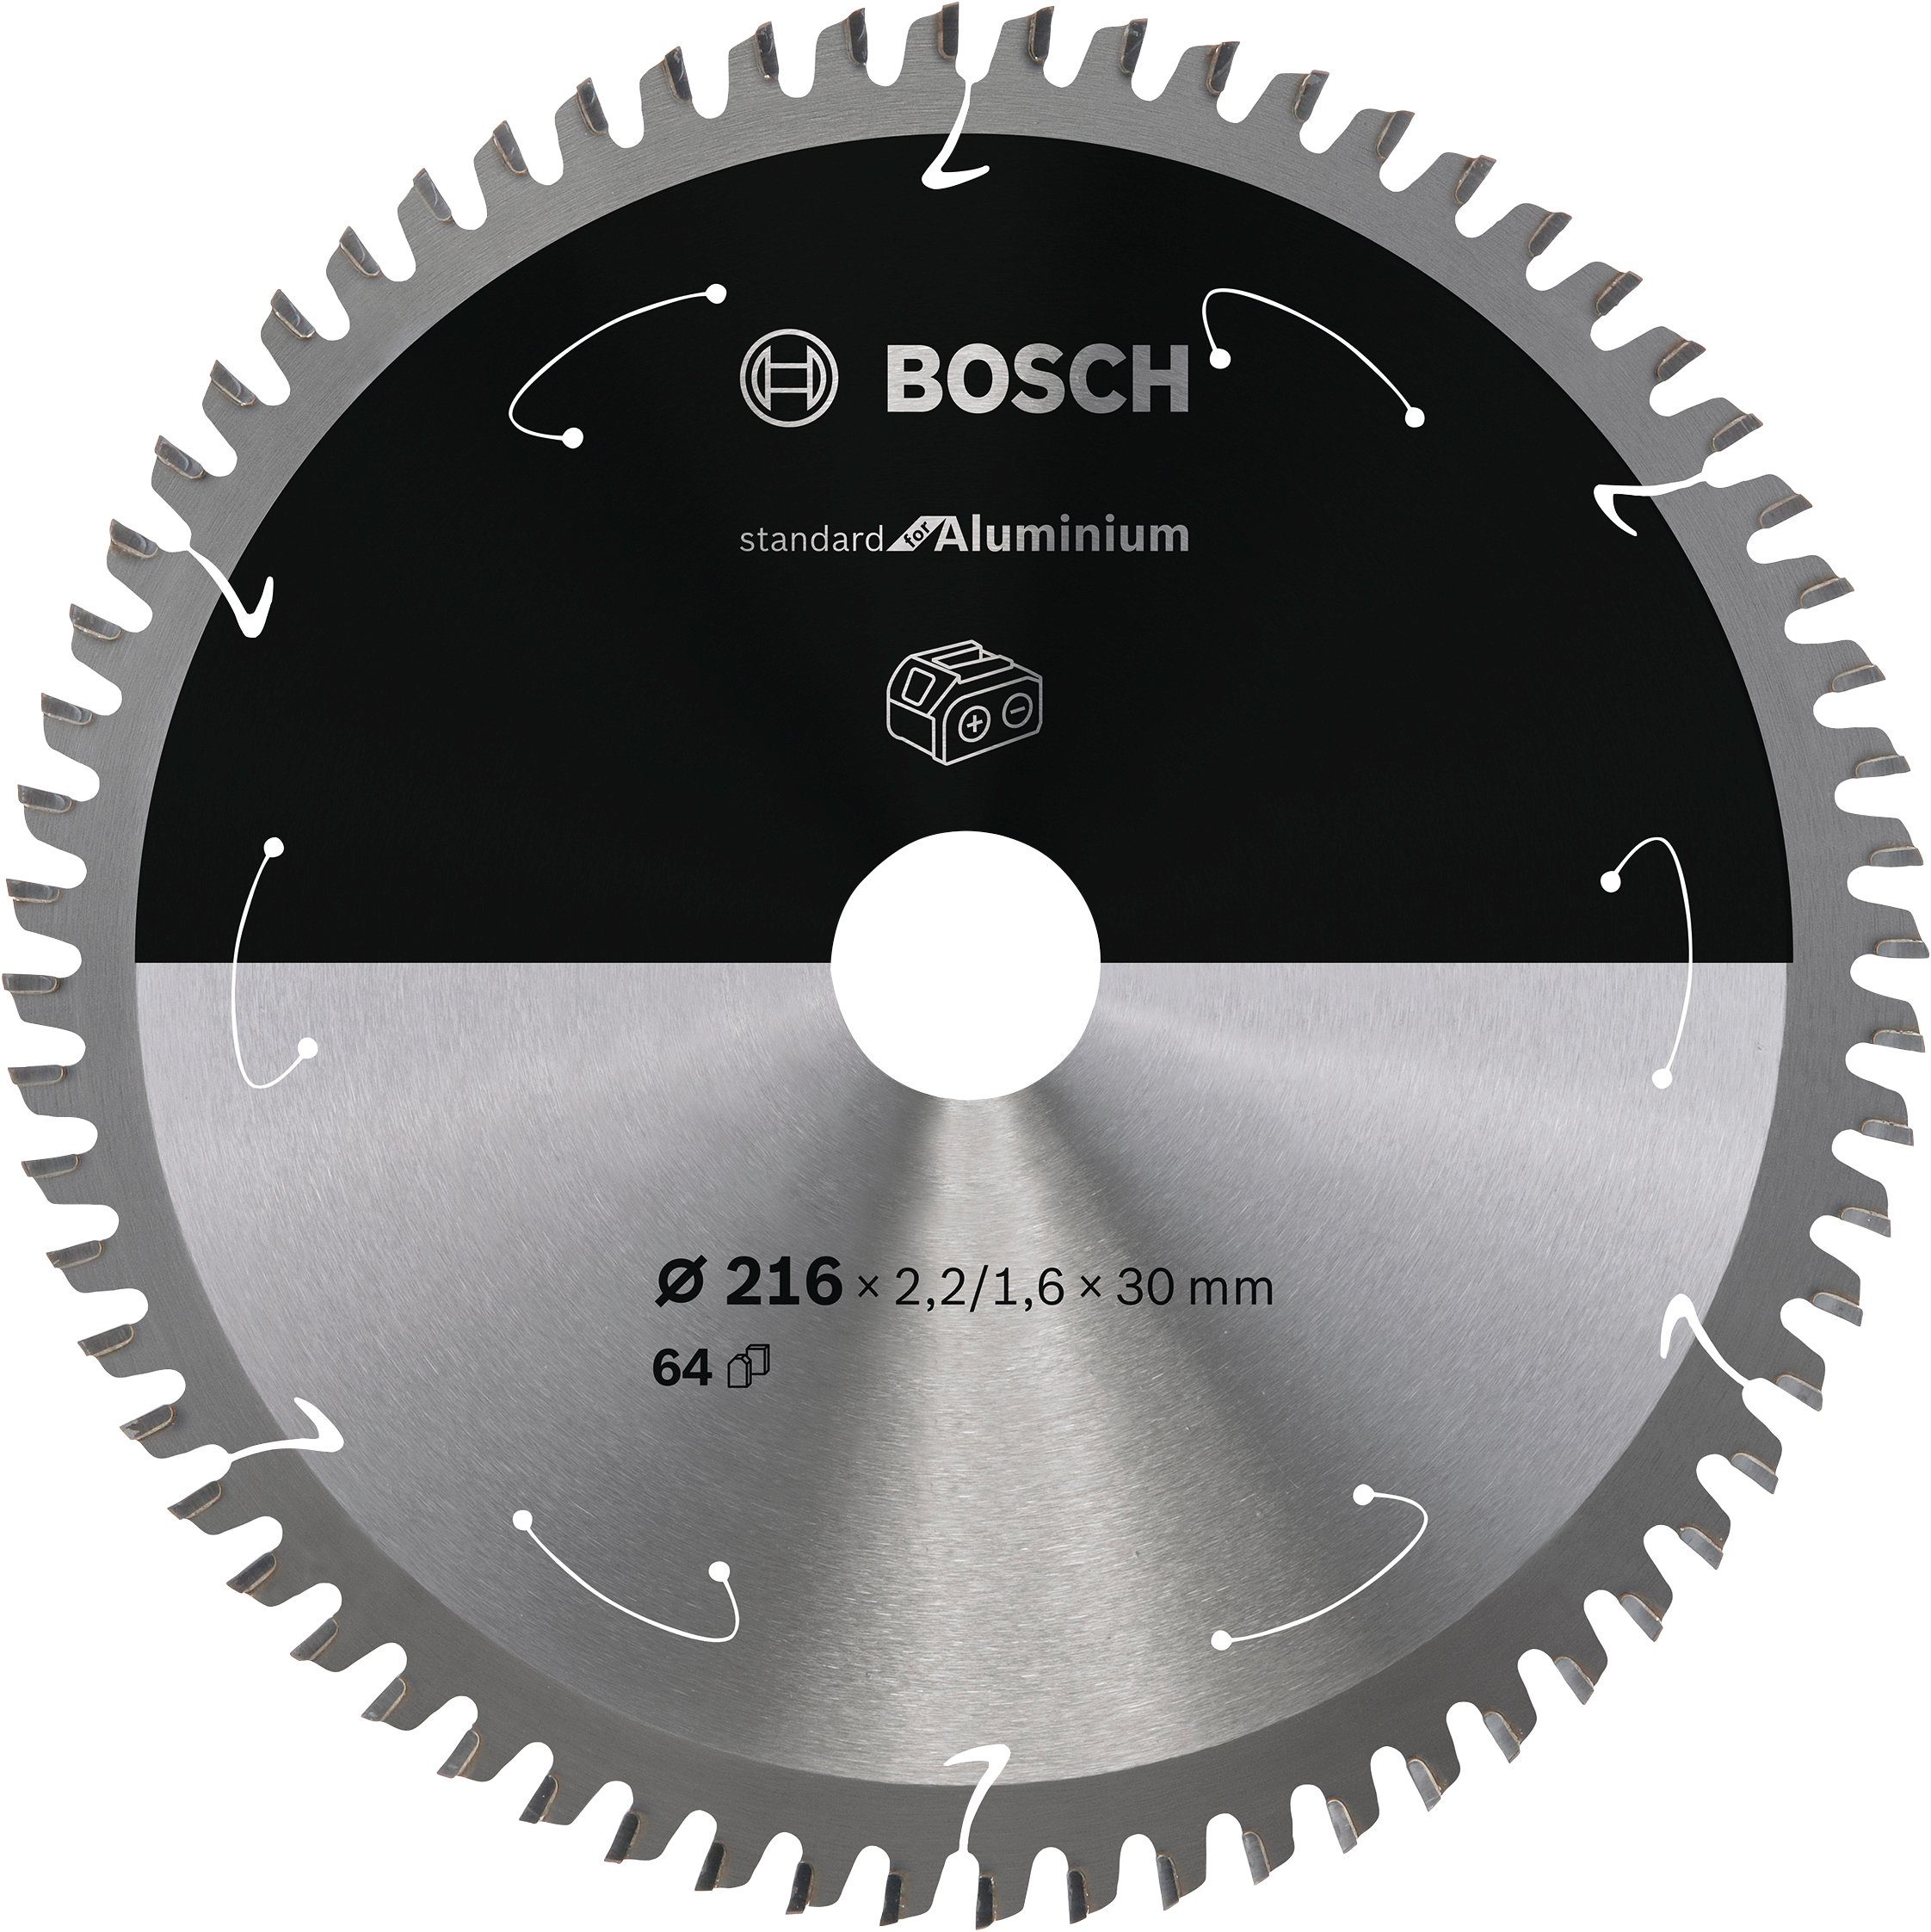 Bosch für Akkusägen, 216 x 2,2/1,6 x 30, Standard for Aluminium, 2608837776, Professional Kreissägeblatt 64 Zähne